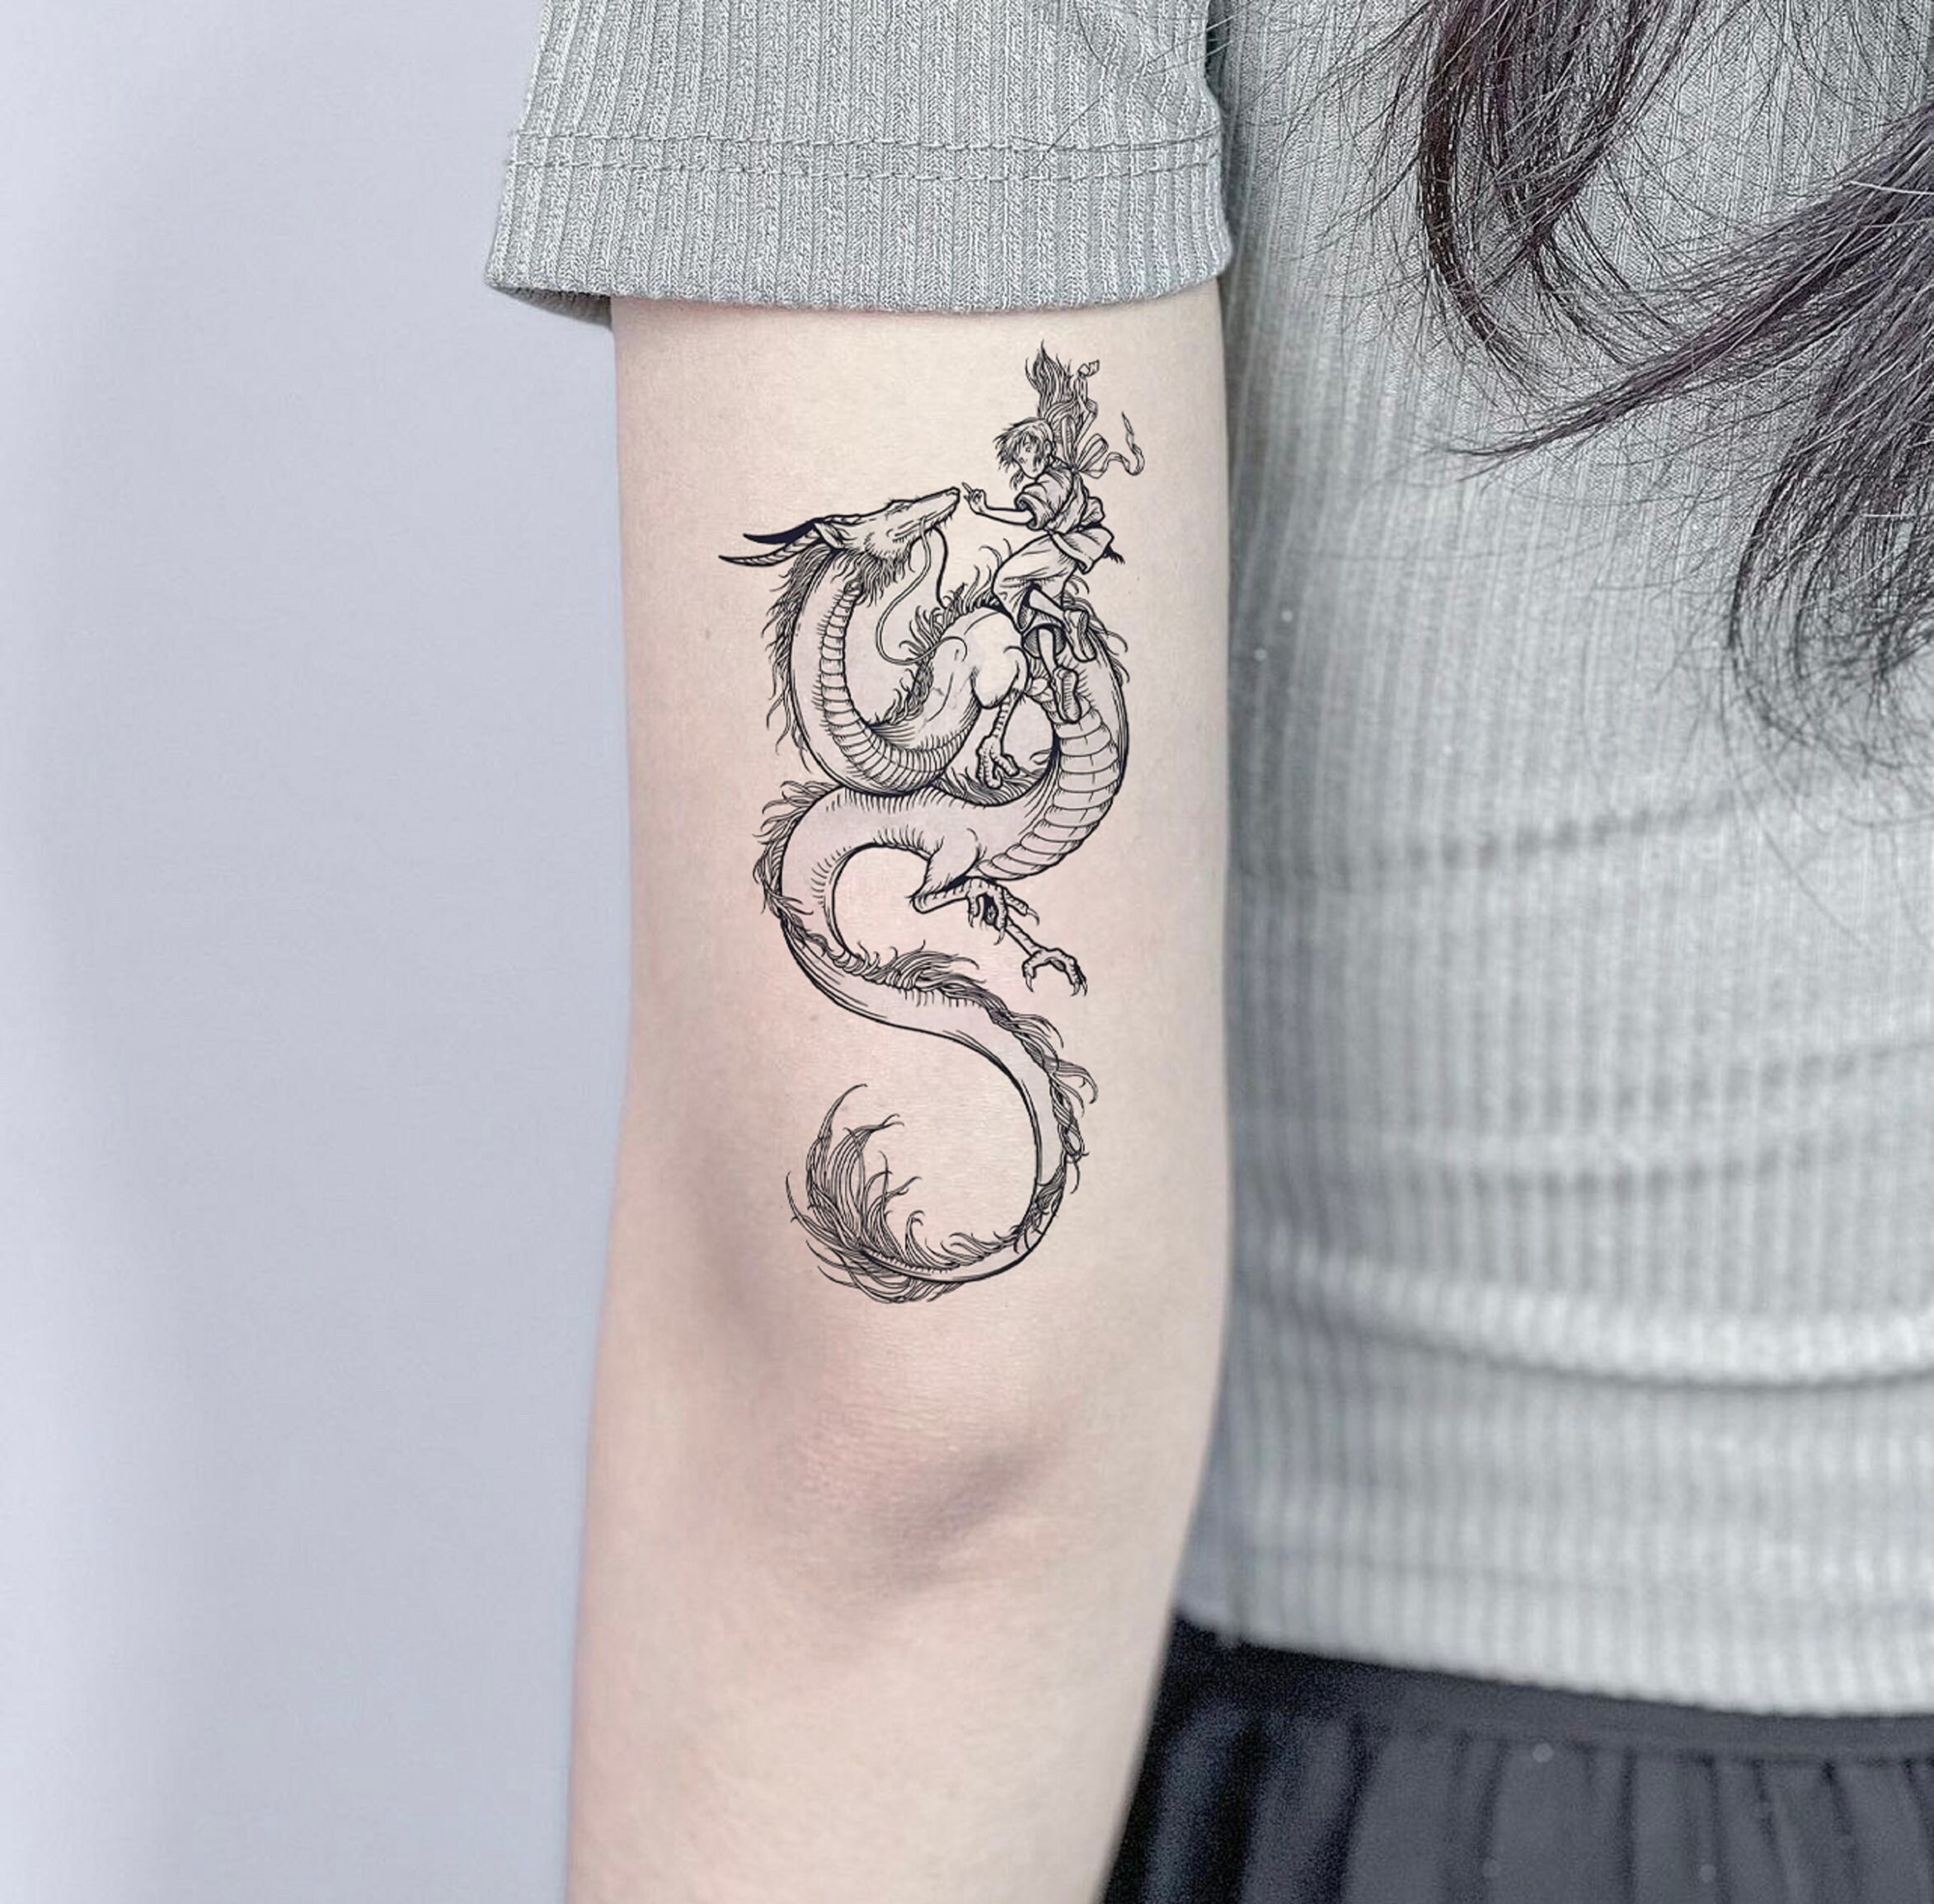 Small dragon tattoo design done @deepaarchitattoo : : . . . .  #smalldragontattoo #smalldragon #tinytattoo #dragontattoo #tattoo #... |  Instagram